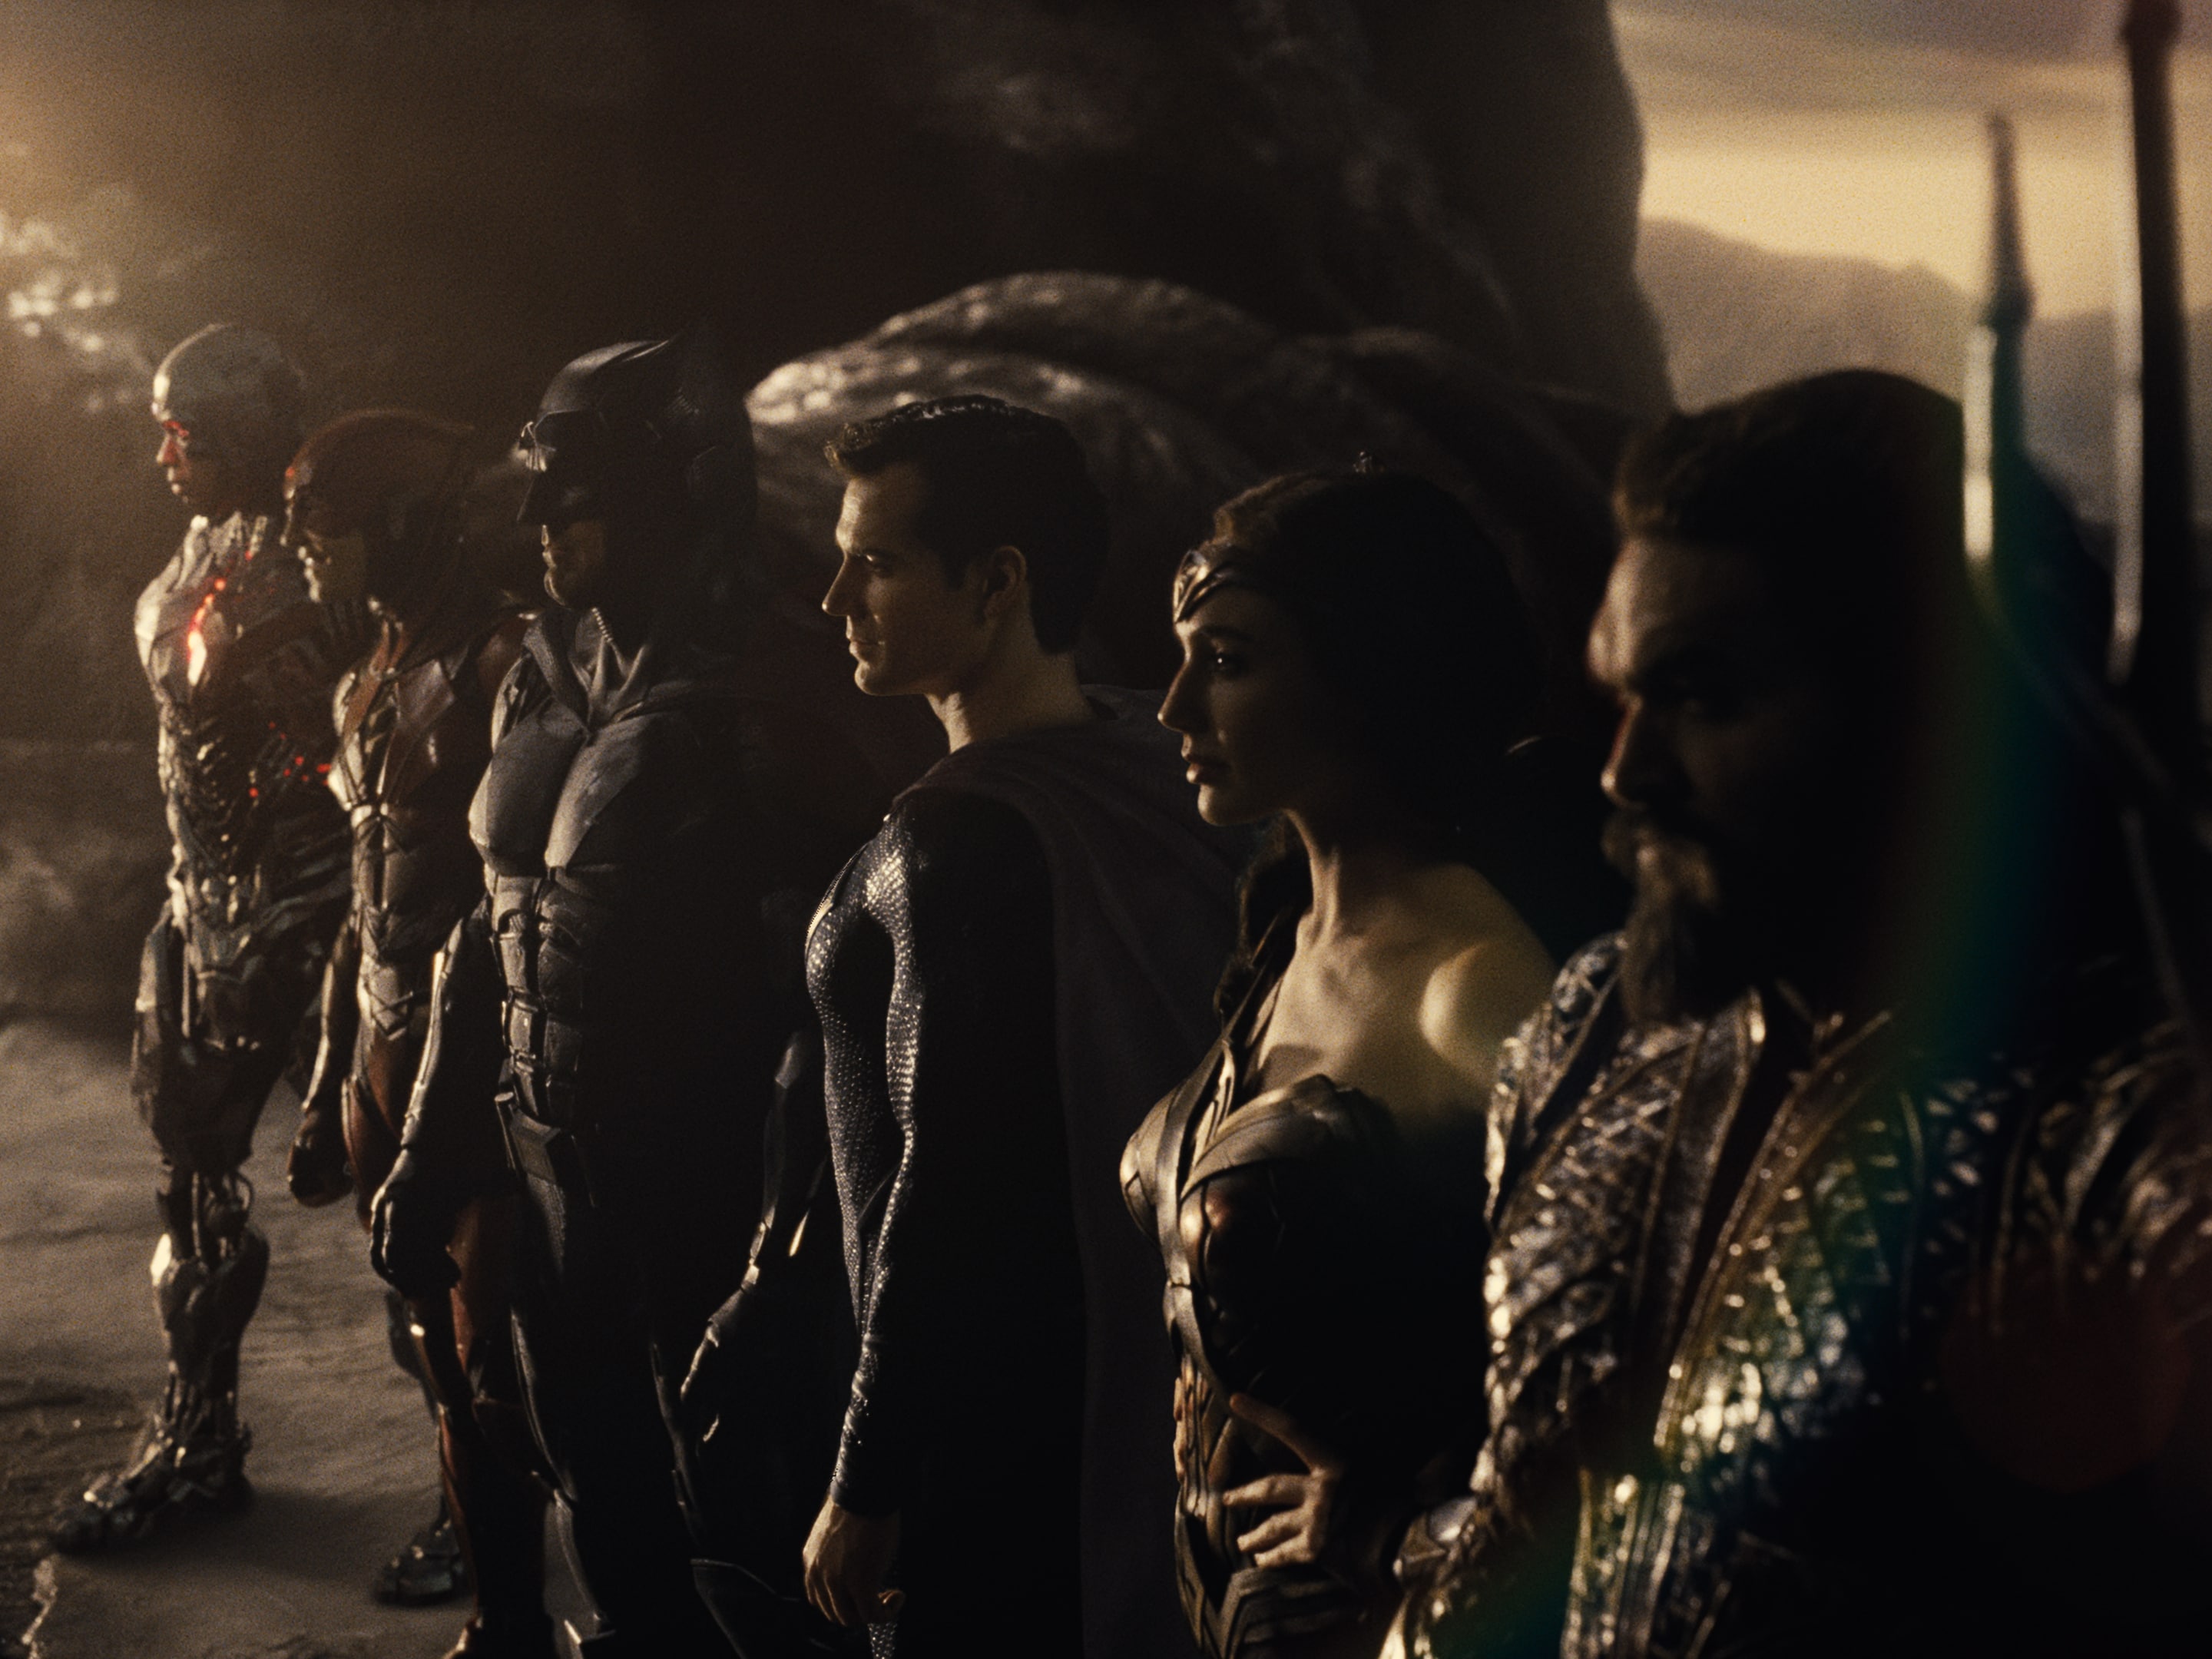 La Justice League di Zack Snyder